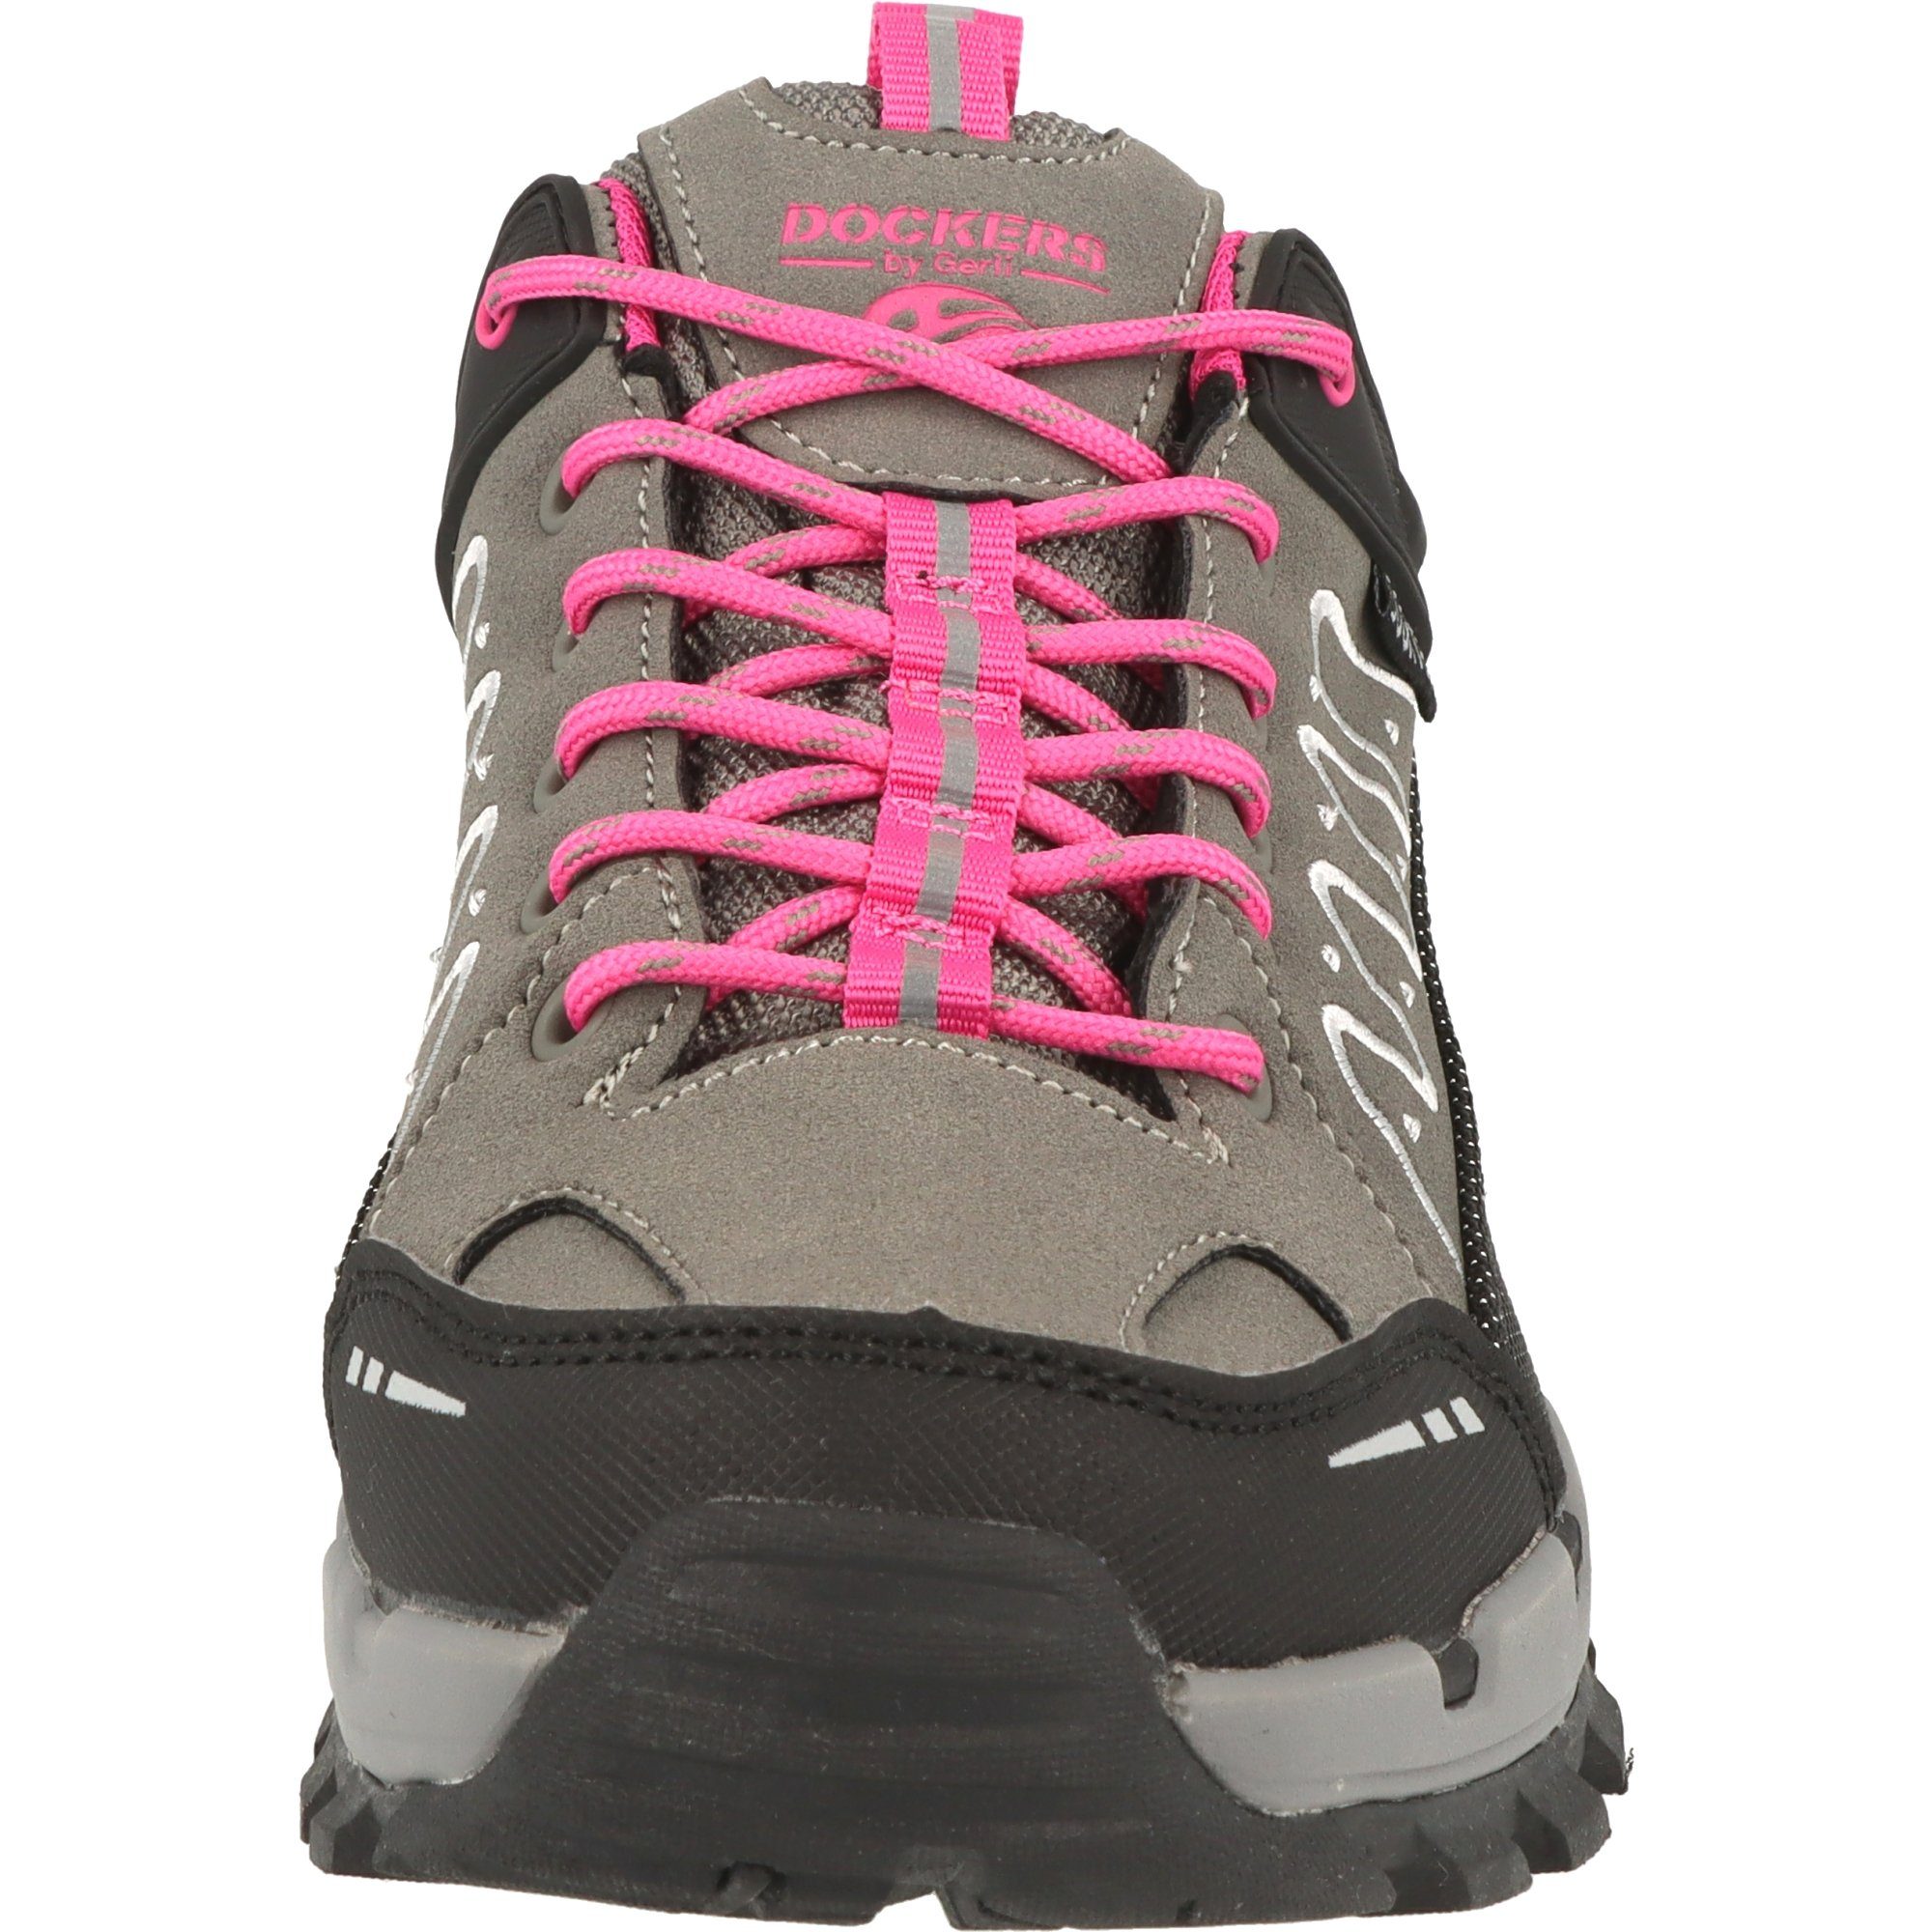 Schuhe Wasserdicht Grau/Pink by Gerli Trekking 49LC202 Trekkingschuh Dockers Damen Wander